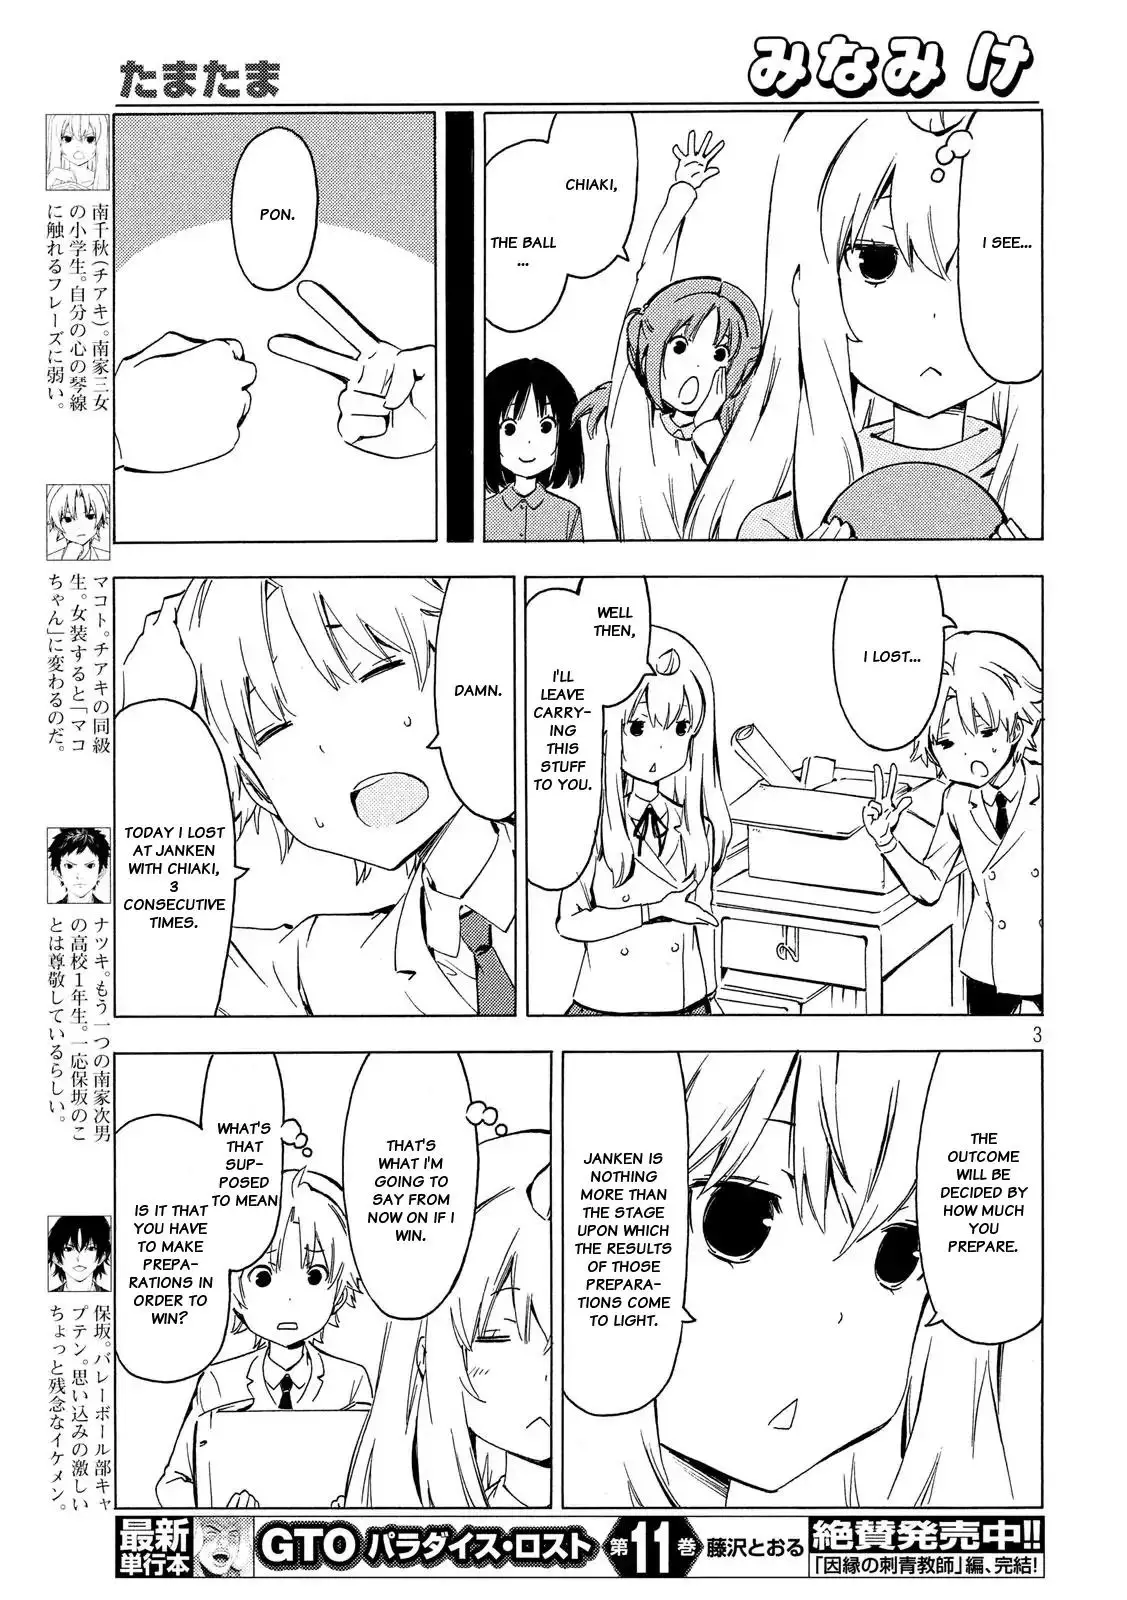 Minami-ke - 333 page 2